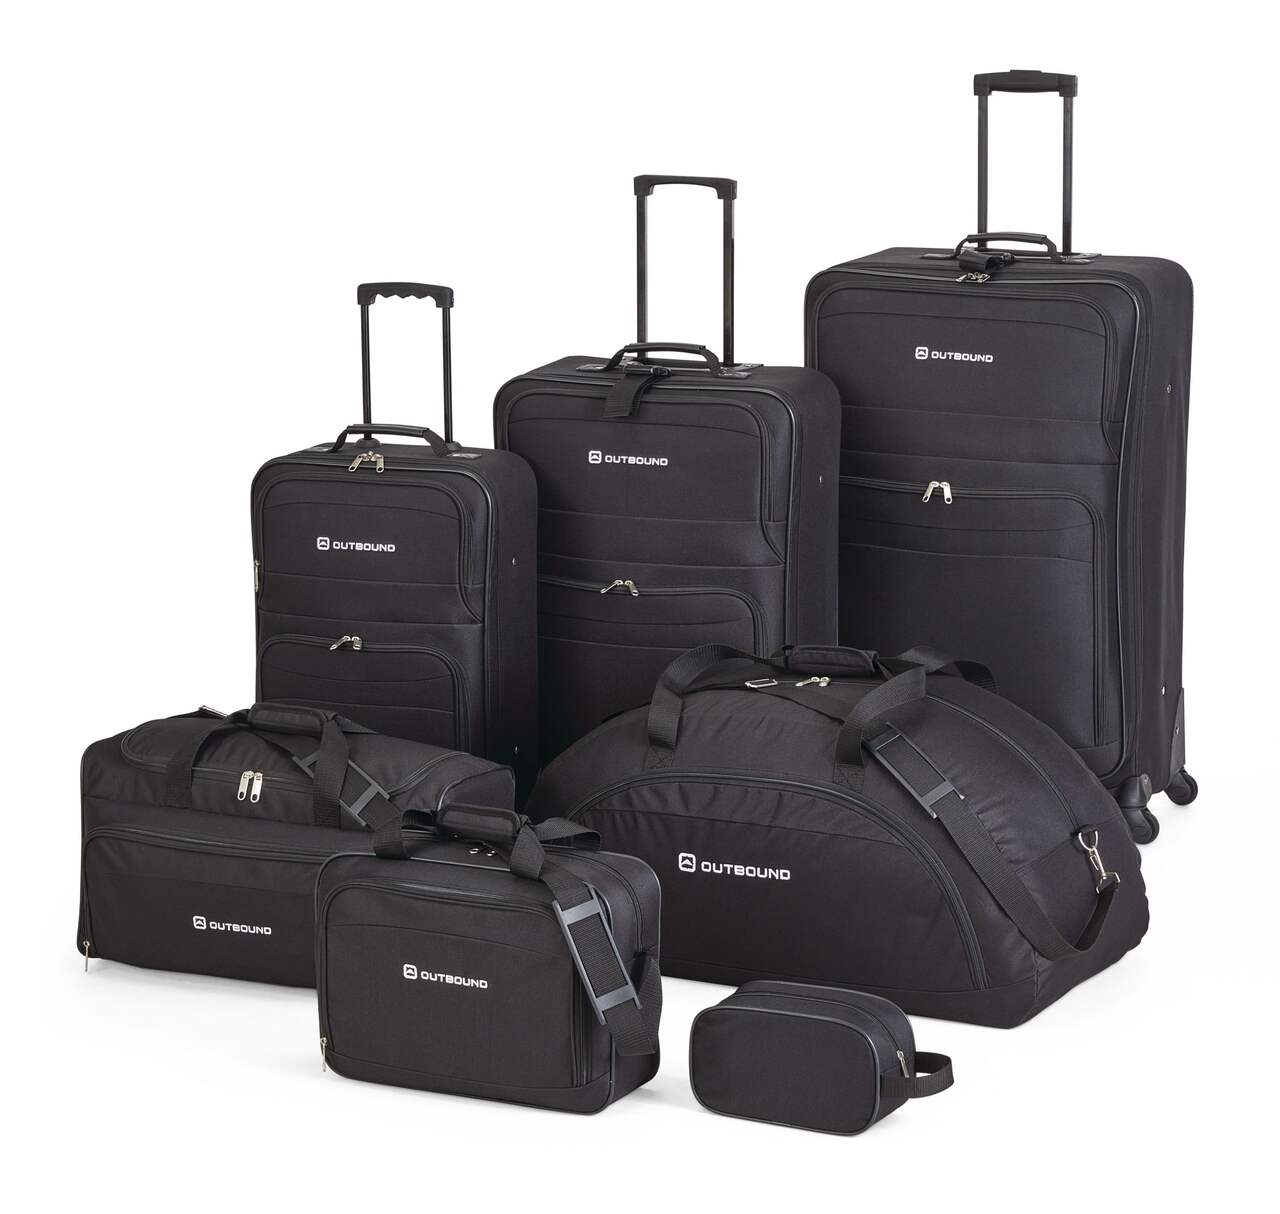 7 pcs Sac de rangement bagage voyage Organisateur valise voyage